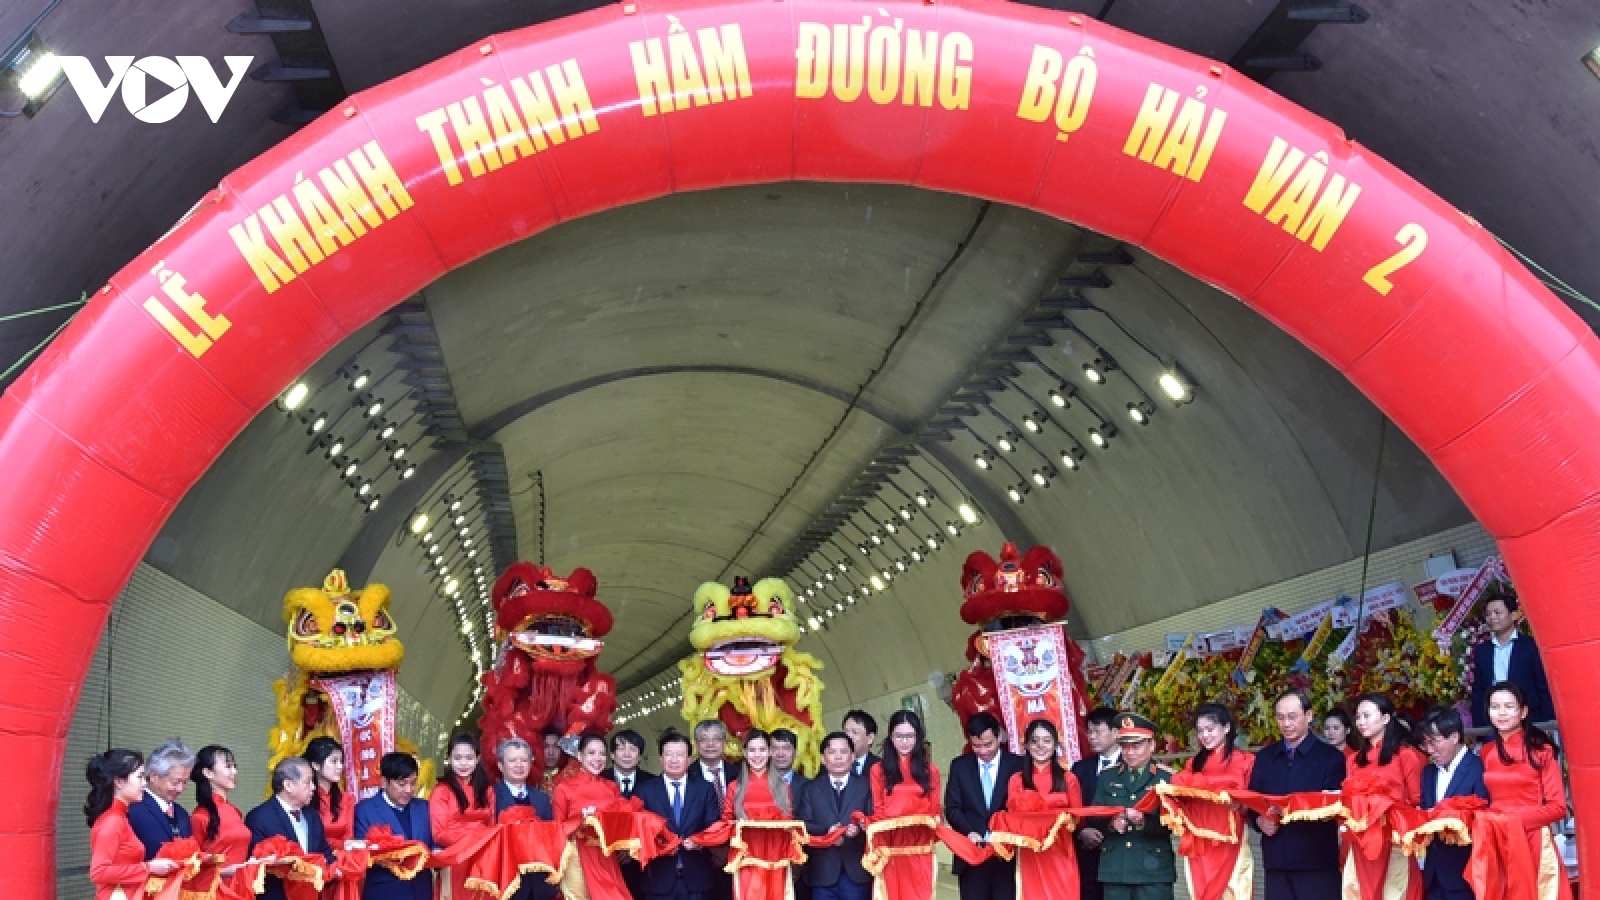 Phó Thủ tướng Trịnh Đình Dũng cắt băng thông xe hầm đường bộ Hải Vân 2